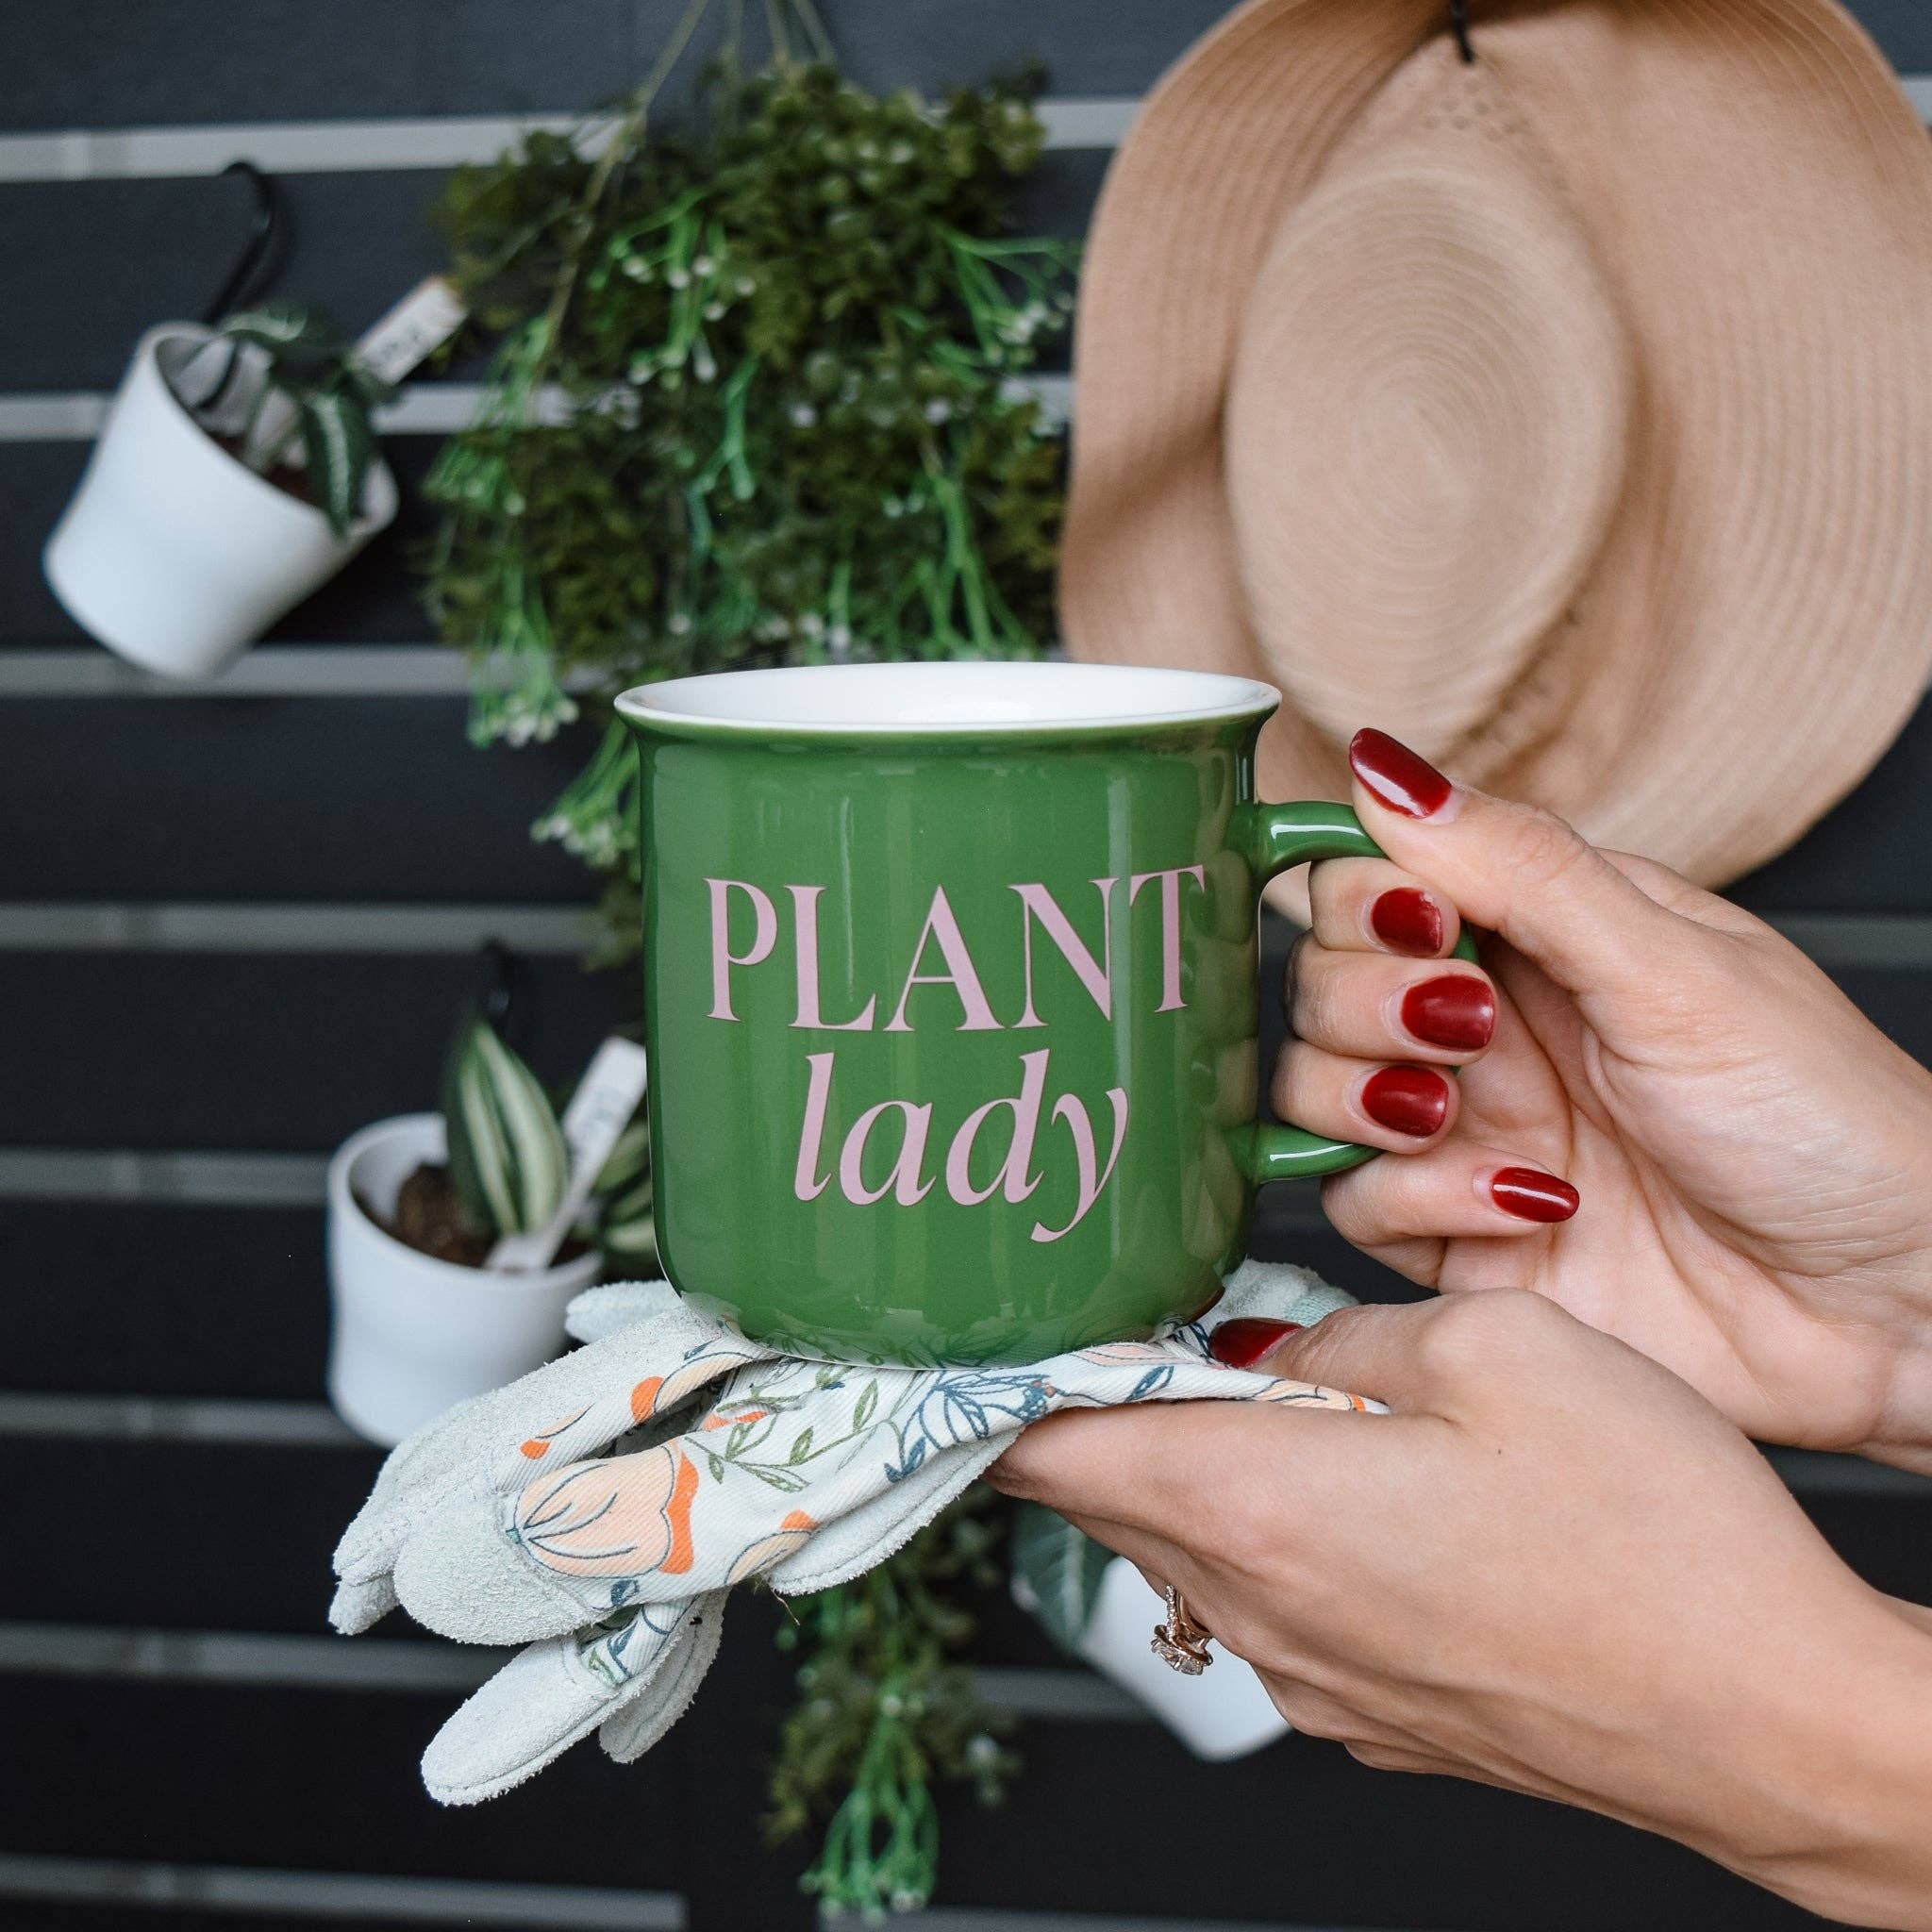 *NEW* Plant Lady 11 oz Campfire Coffee Mug - Home Decor